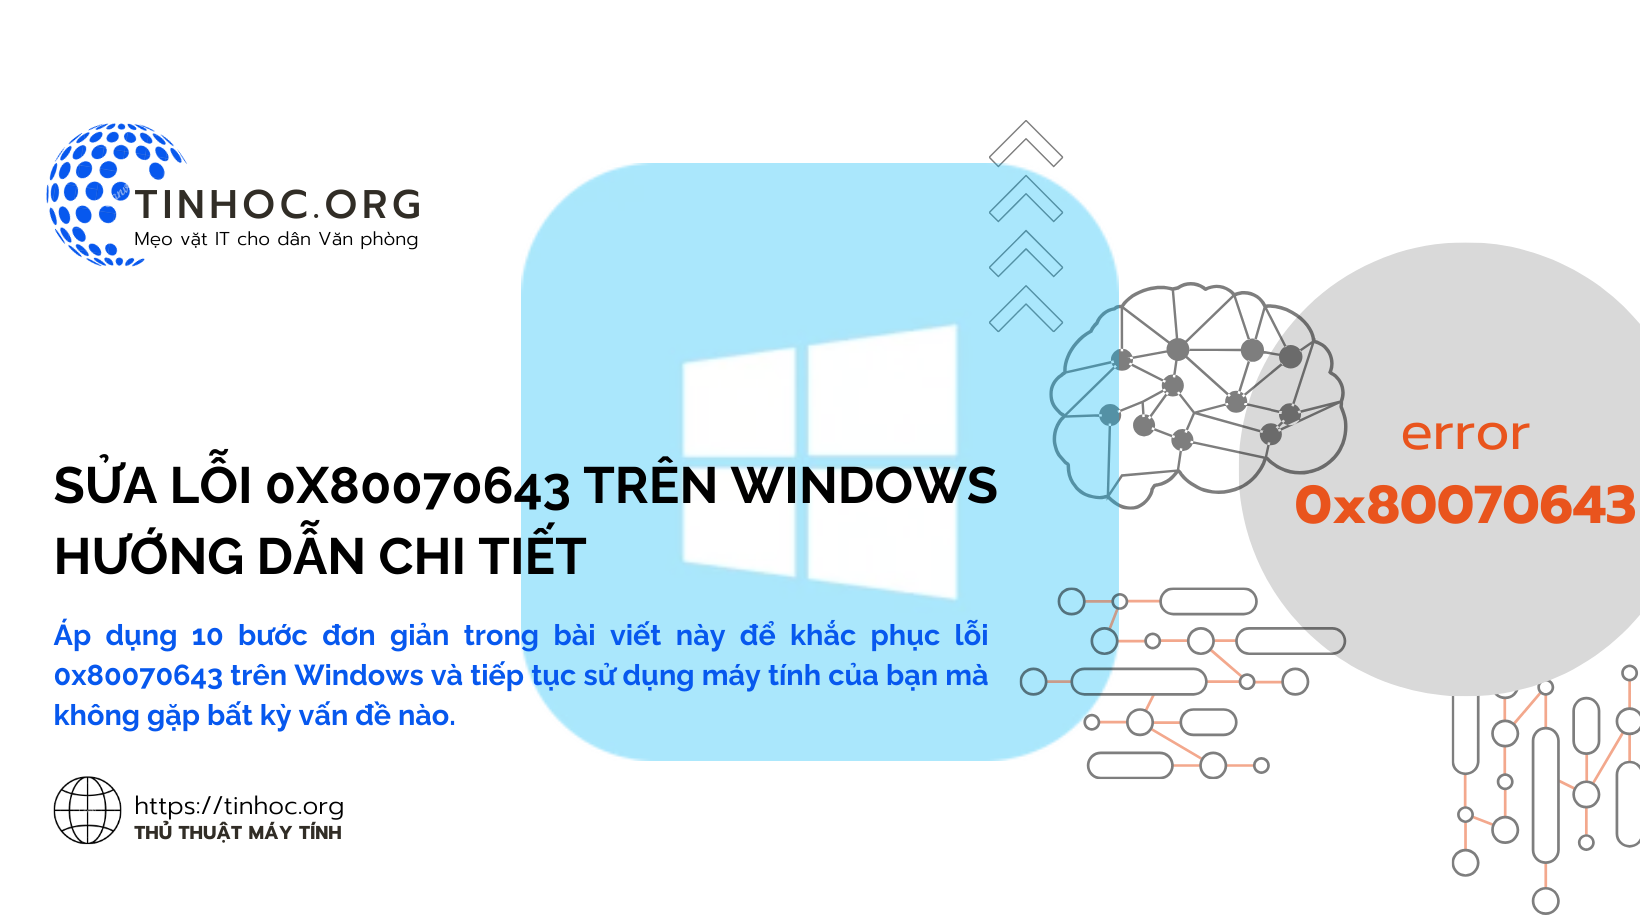 Áp dụng 10 bước đơn giản trong bài viết này để khắc phục lỗi 0x80070643 trên Windows và tiếp tục sử dụng máy tính của bạn mà không gặp bất kỳ vấn đề nào.